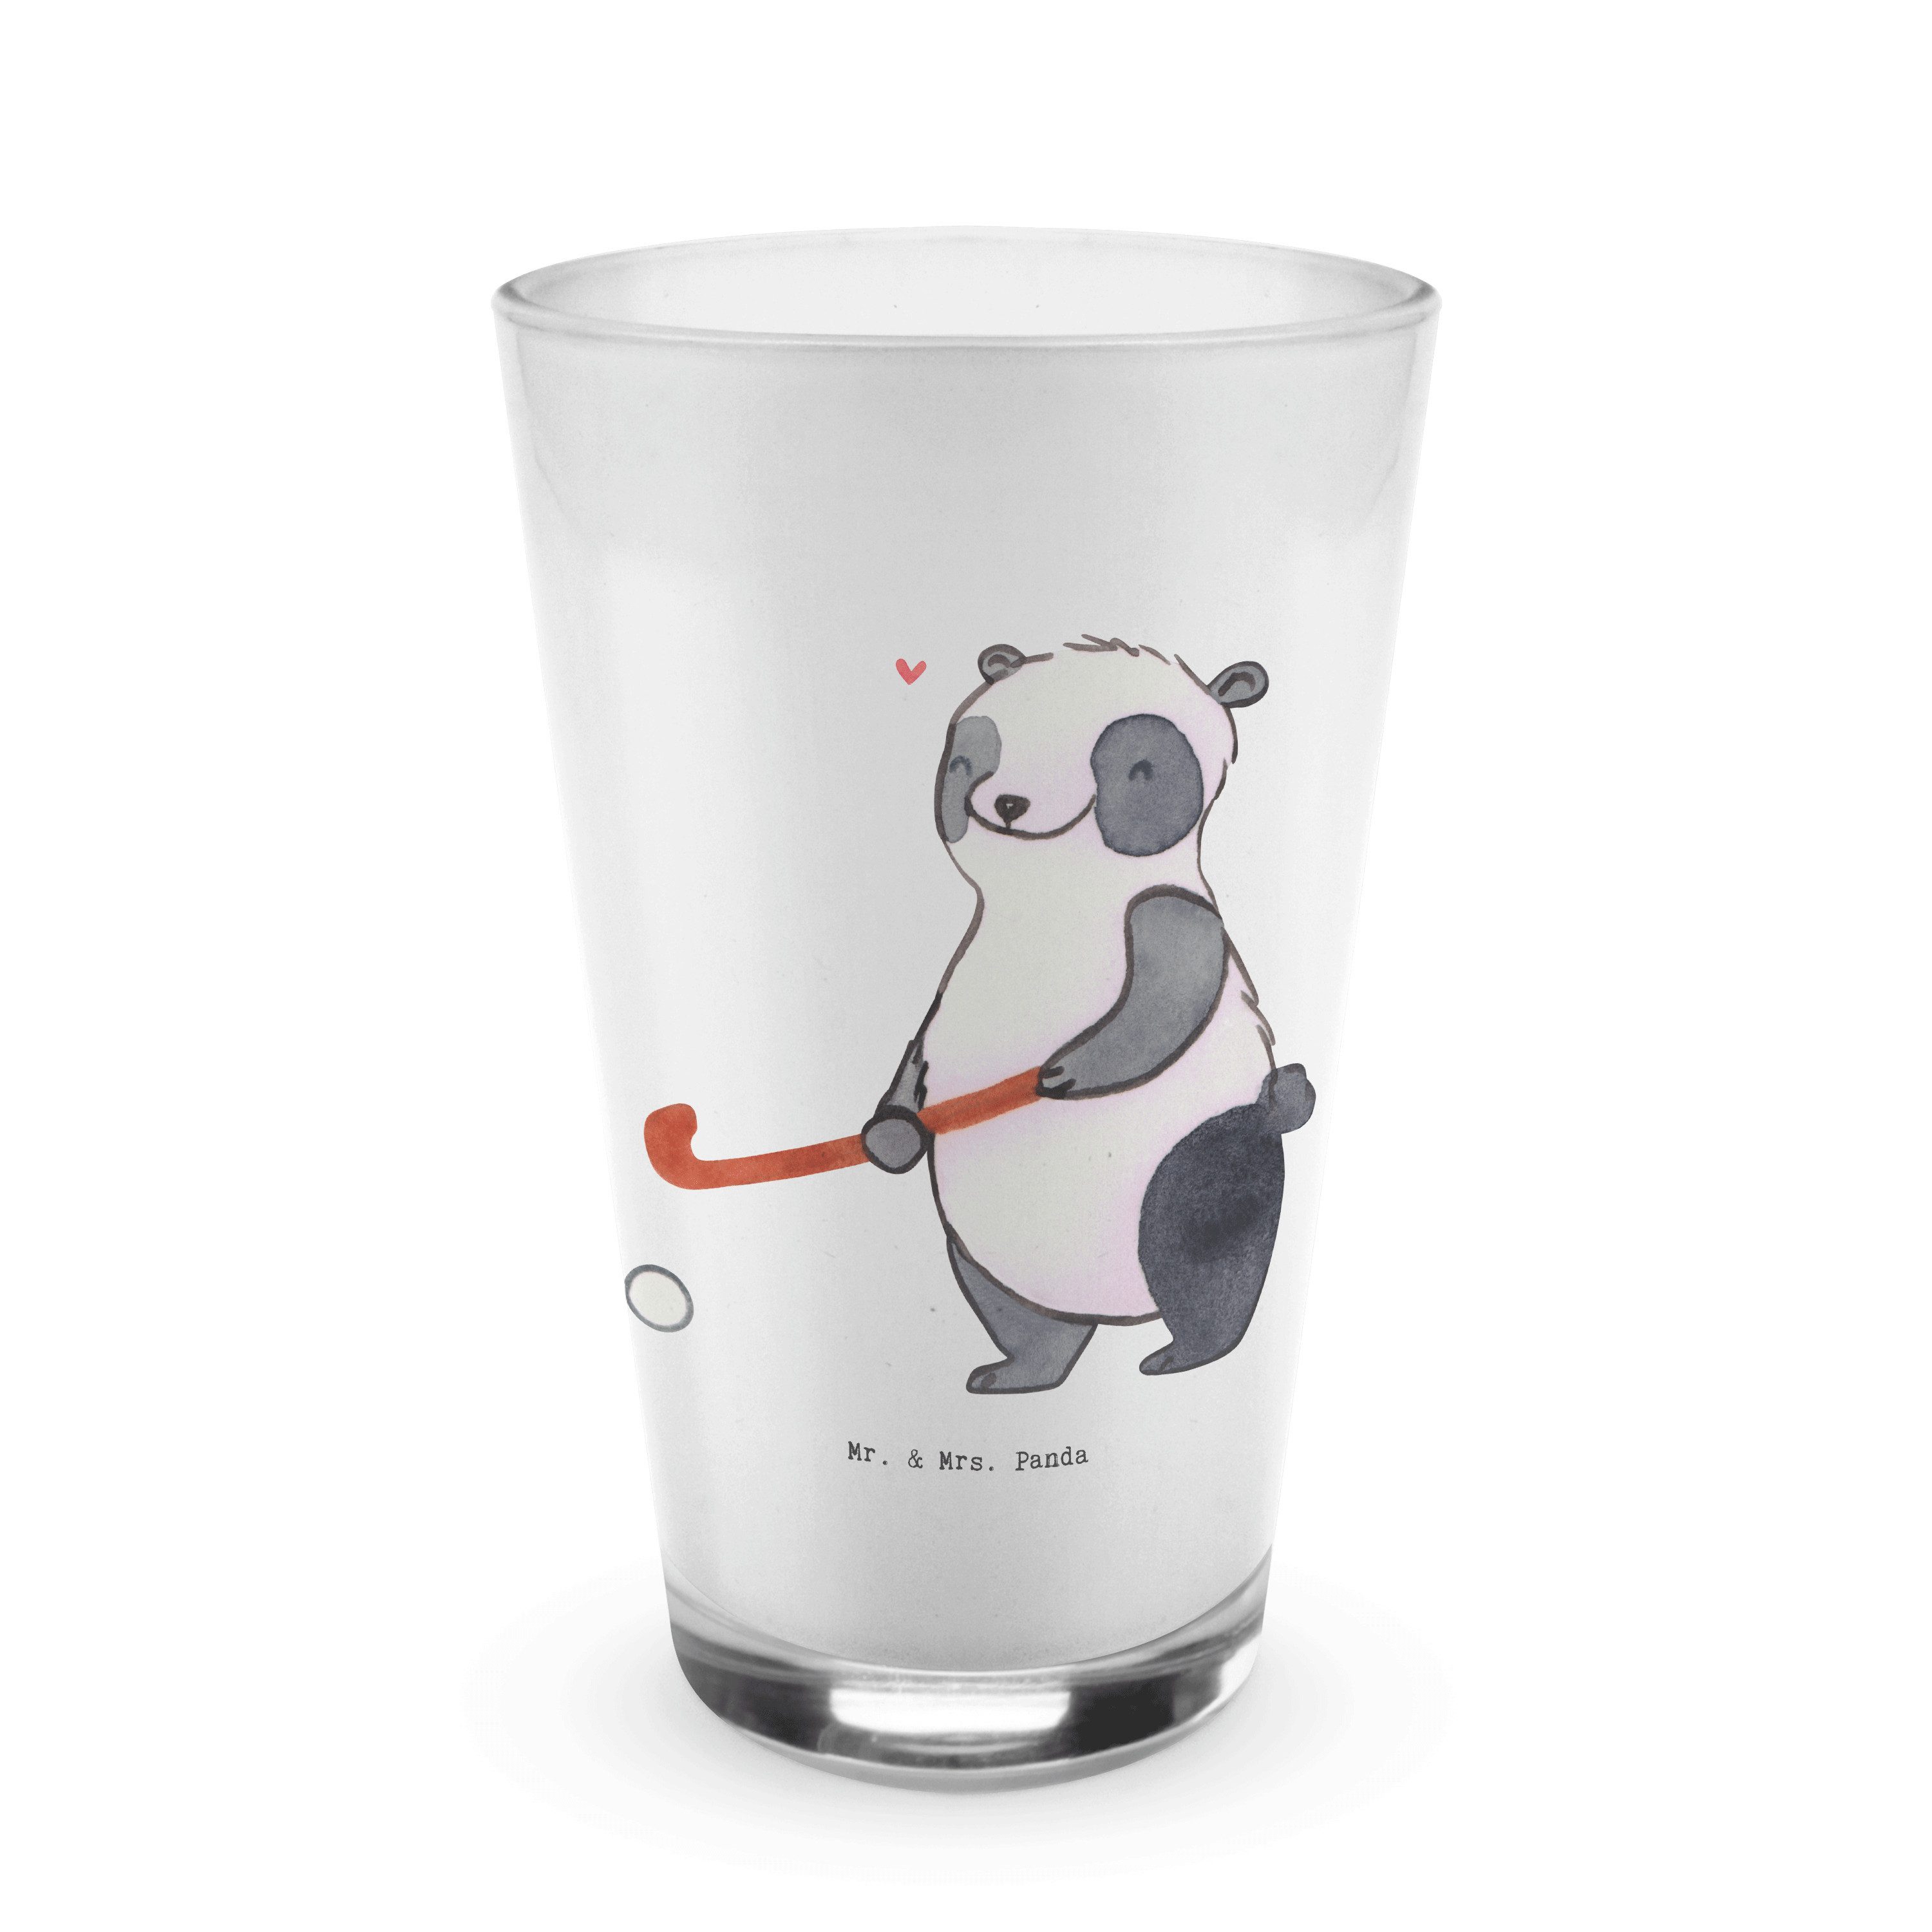 Mr. & Mrs. Panda Glas Panda Hockey spielen - Transparent - Geschenk, Glas, Hockey Verein, F, Premium Glas, Edles Matt-Design